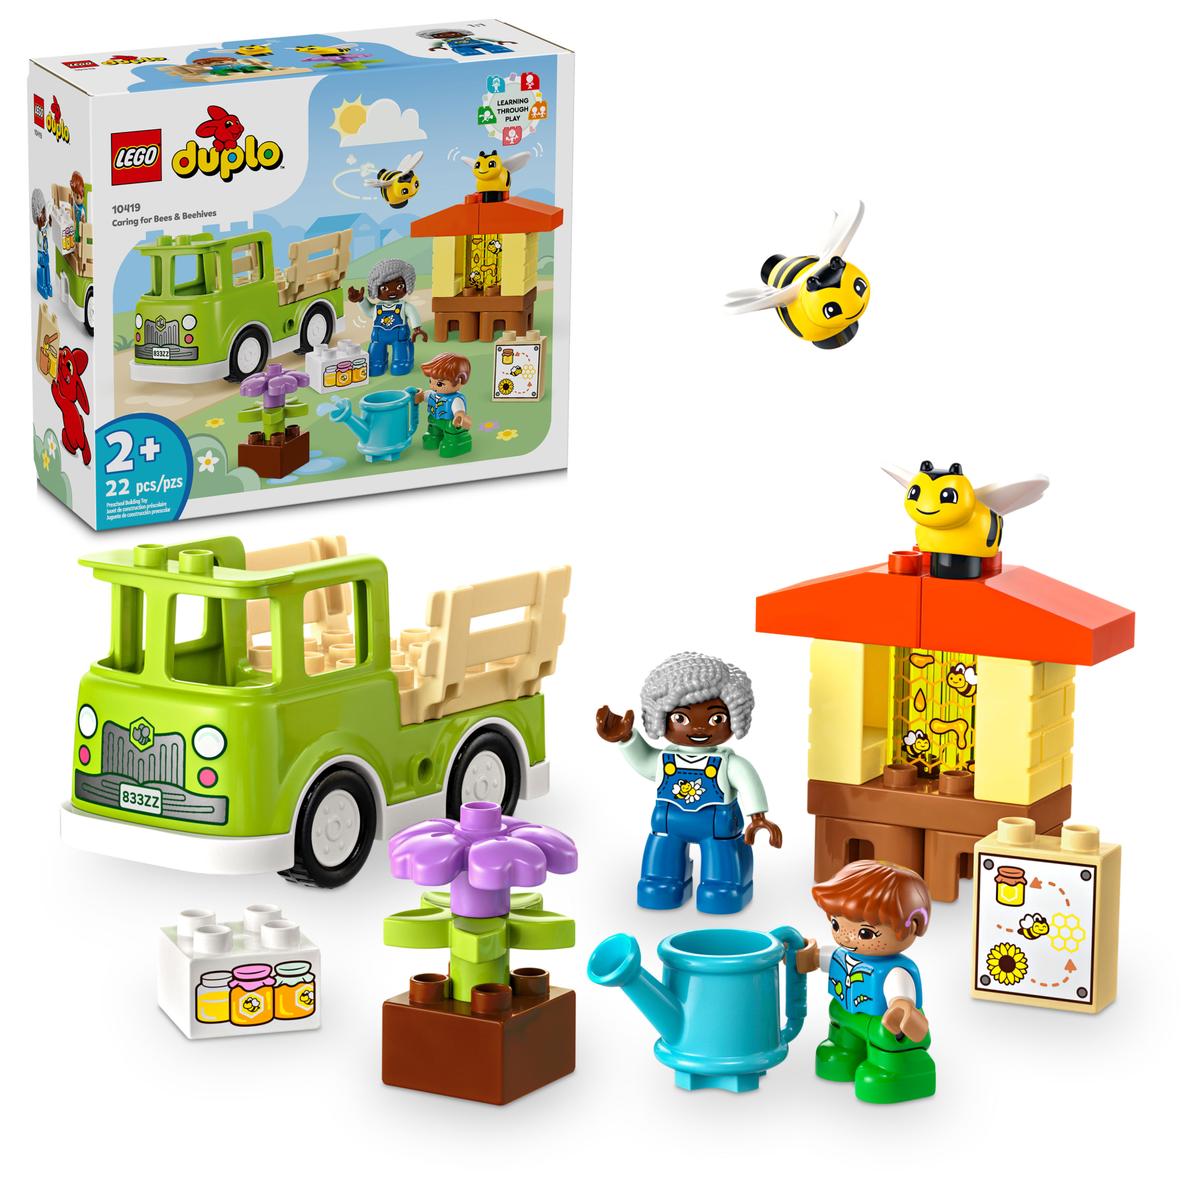 Lego Duplo 10419 - Imkerei und Bienenstöcke